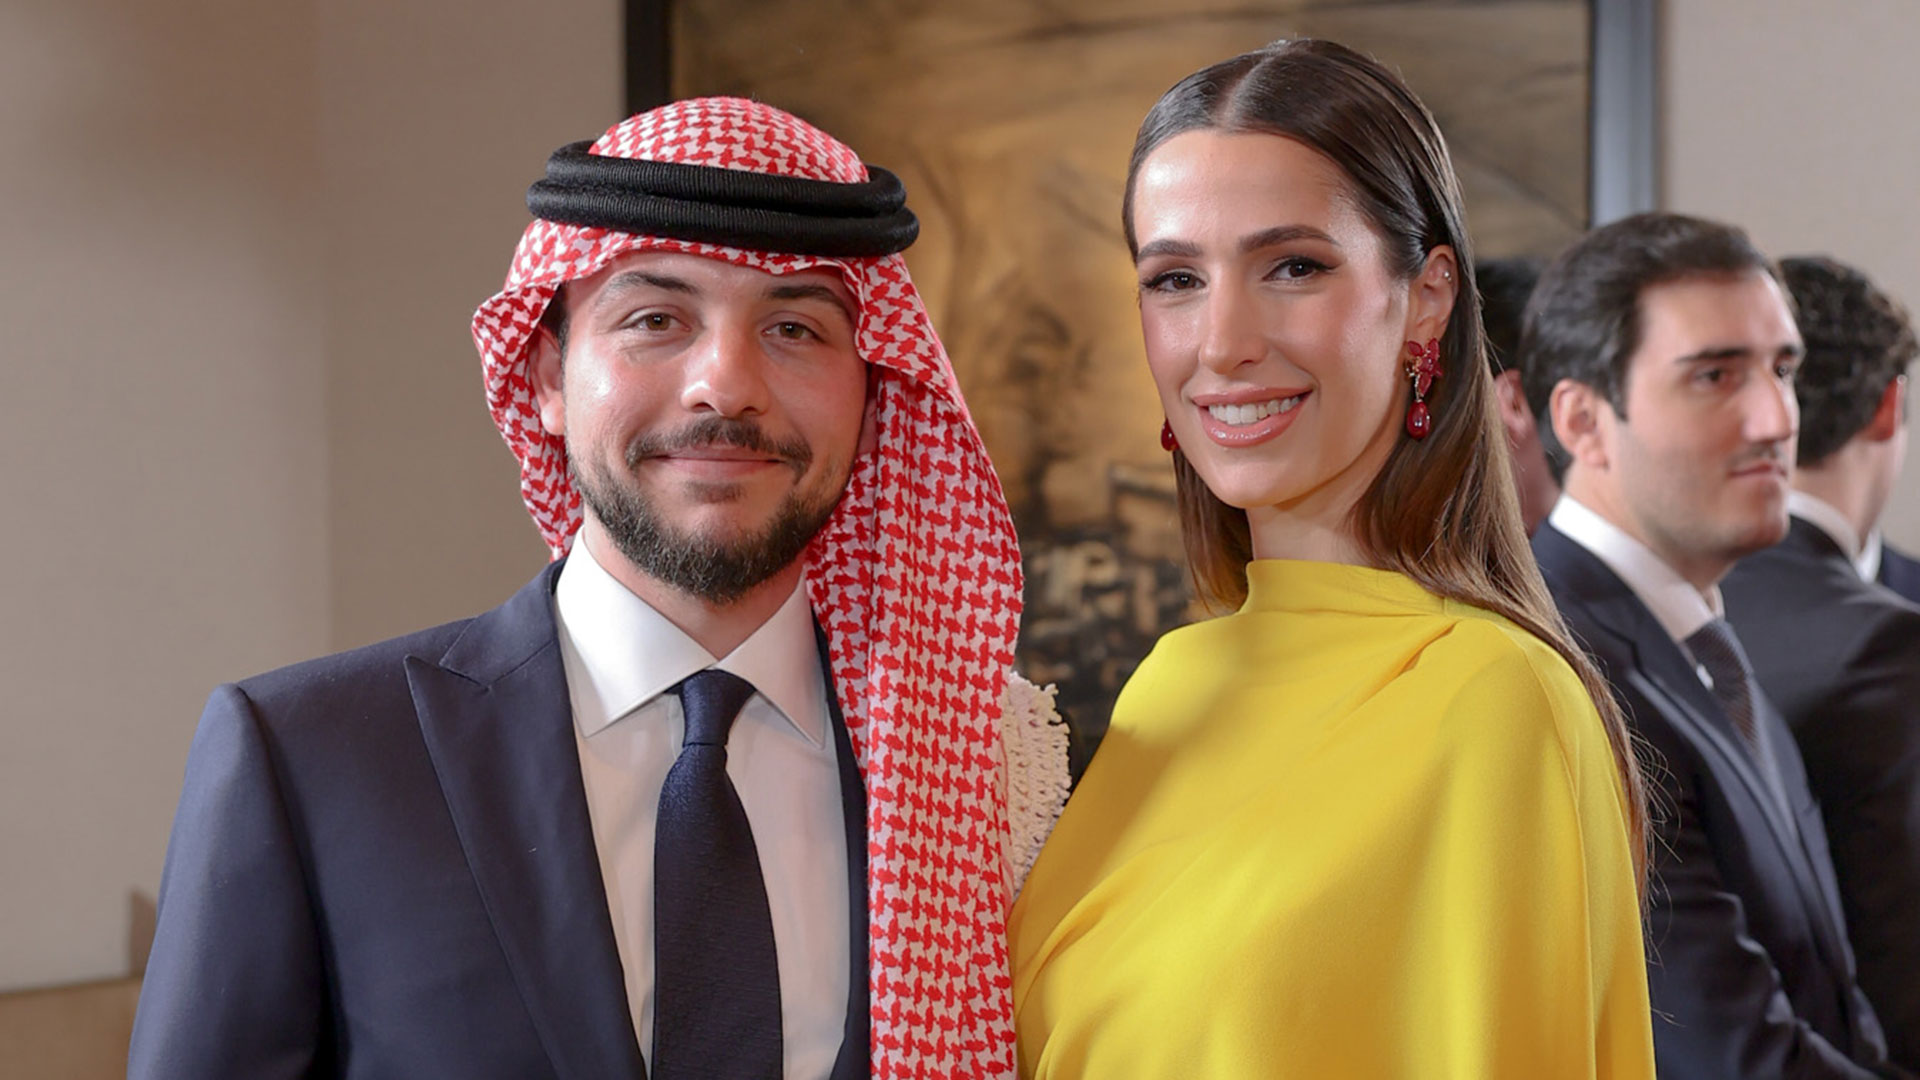 Una boda real que marca el futuro de Jordania: el príncipe Hussein se casa con su novia saudita Rajwa Alseif